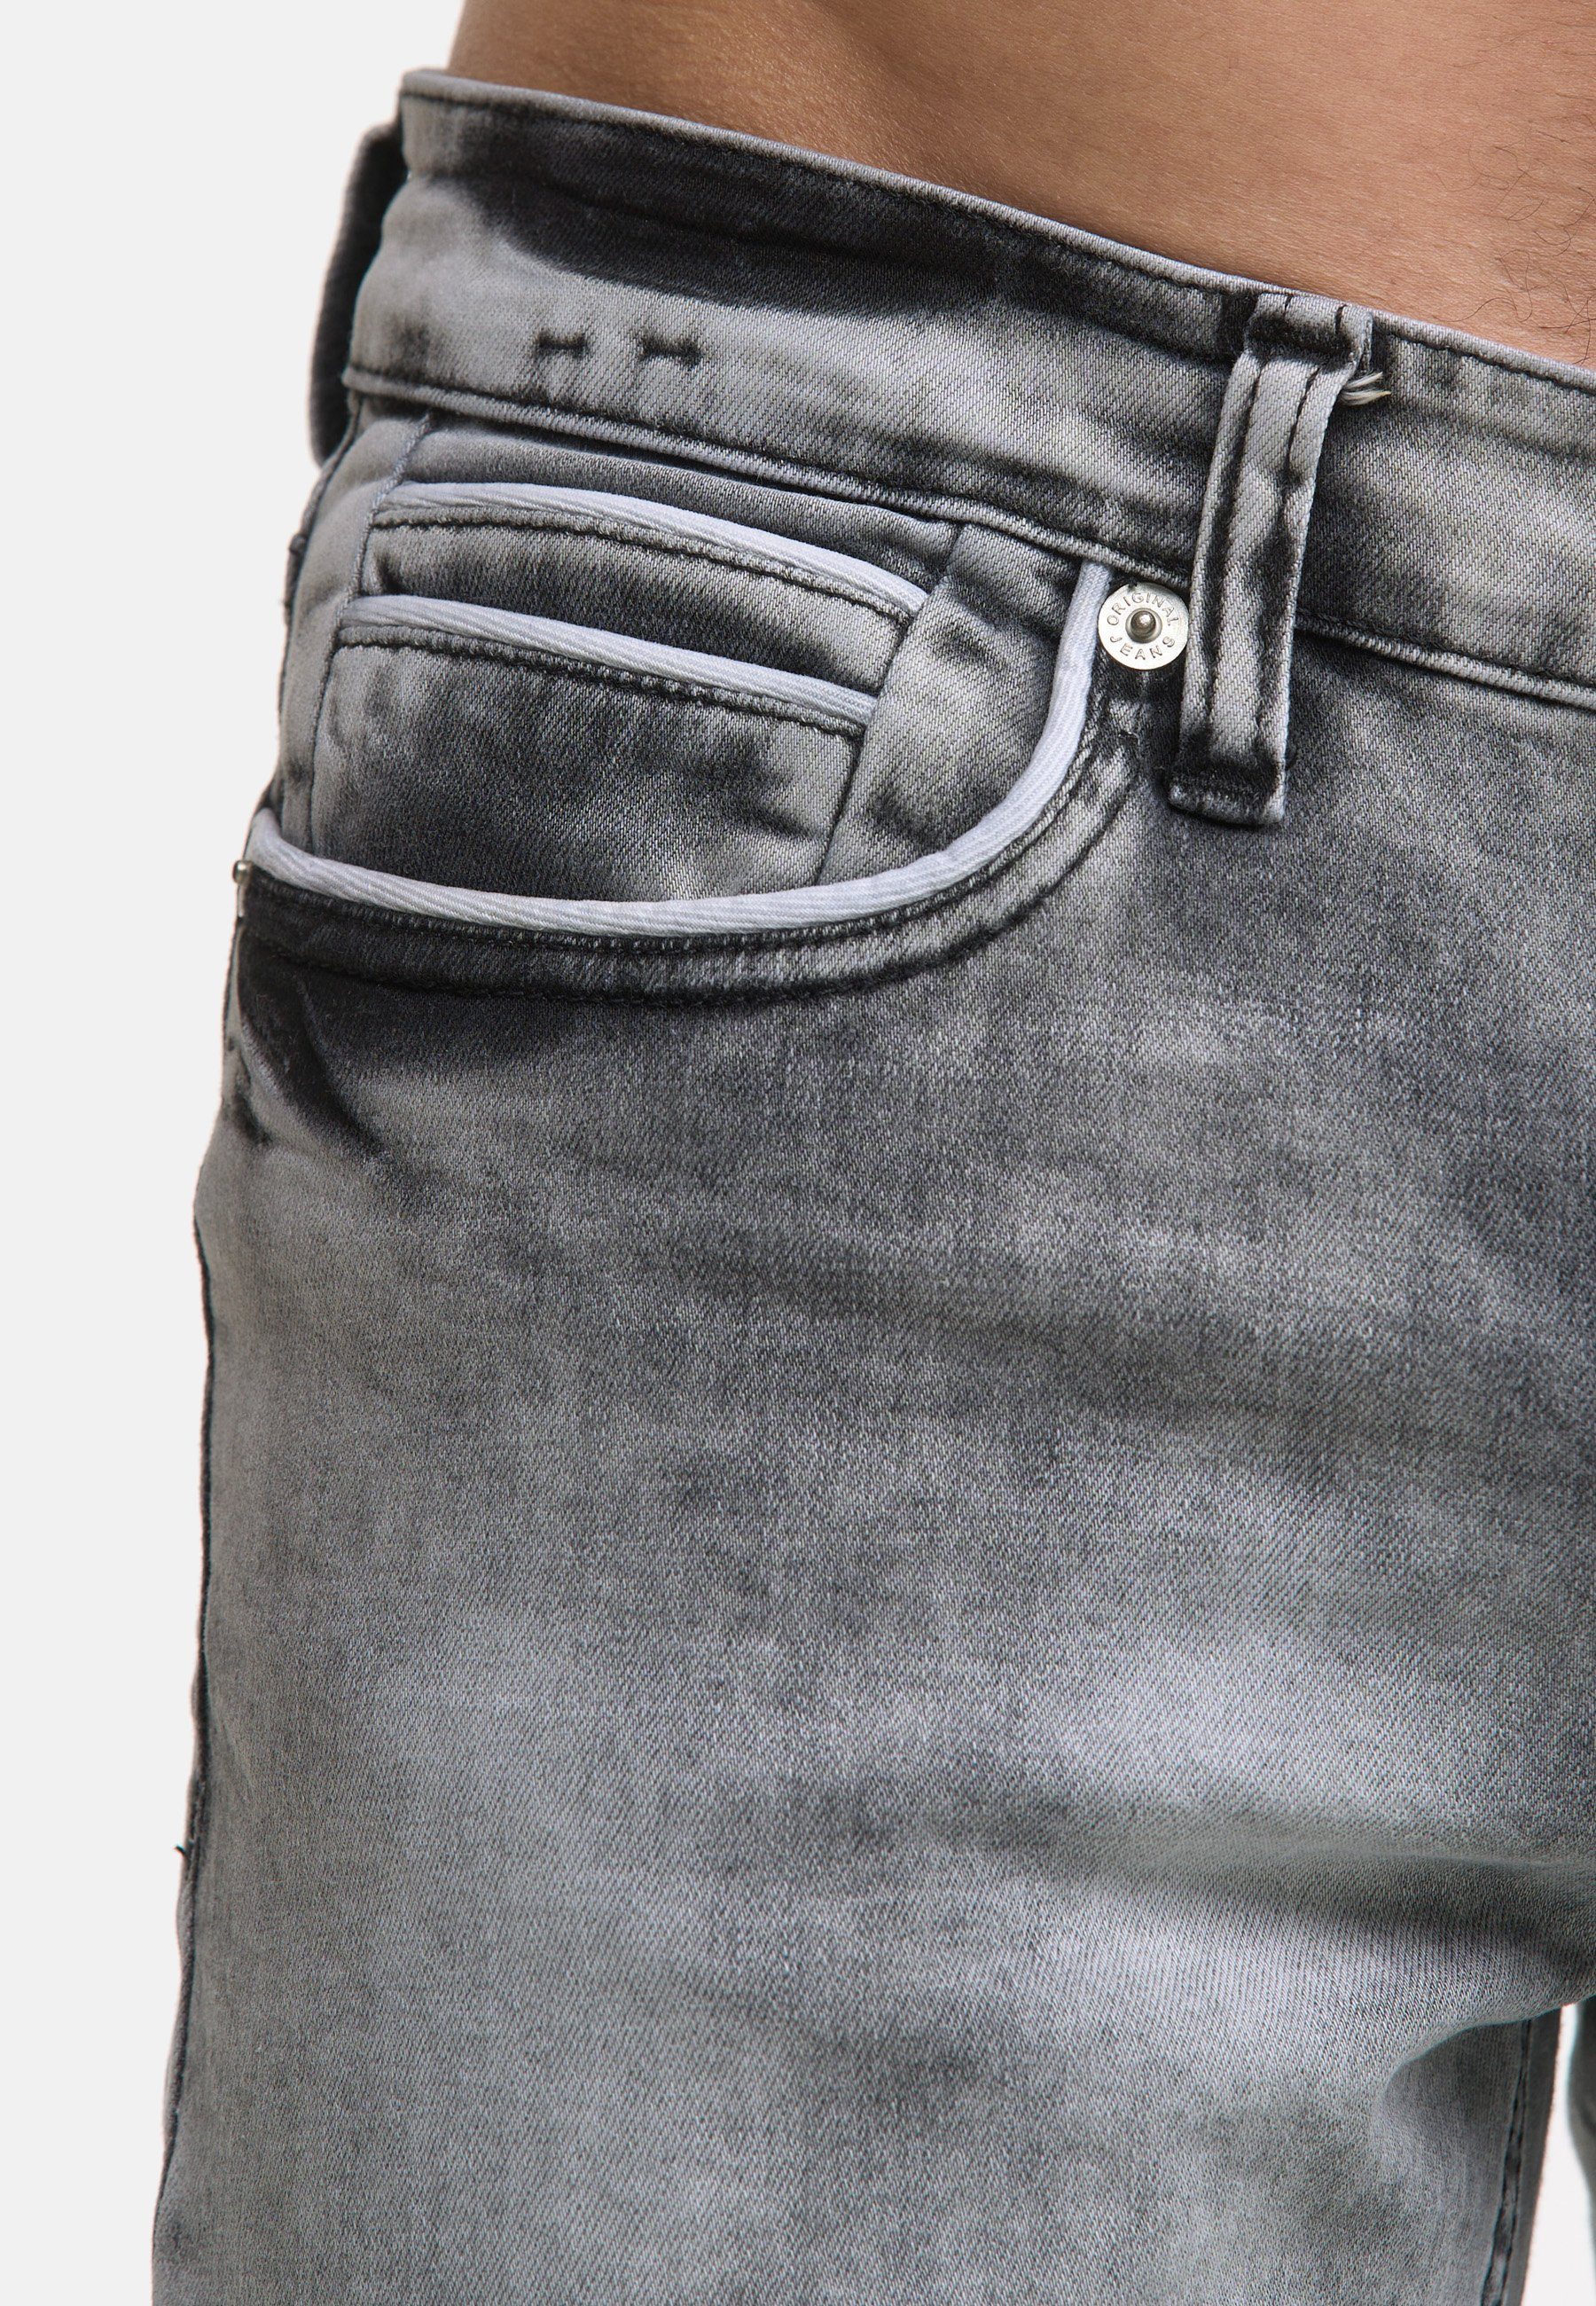 3450 Code47 Jeans Herren Grey Light Regular-fit-Jeans Code47 Modell